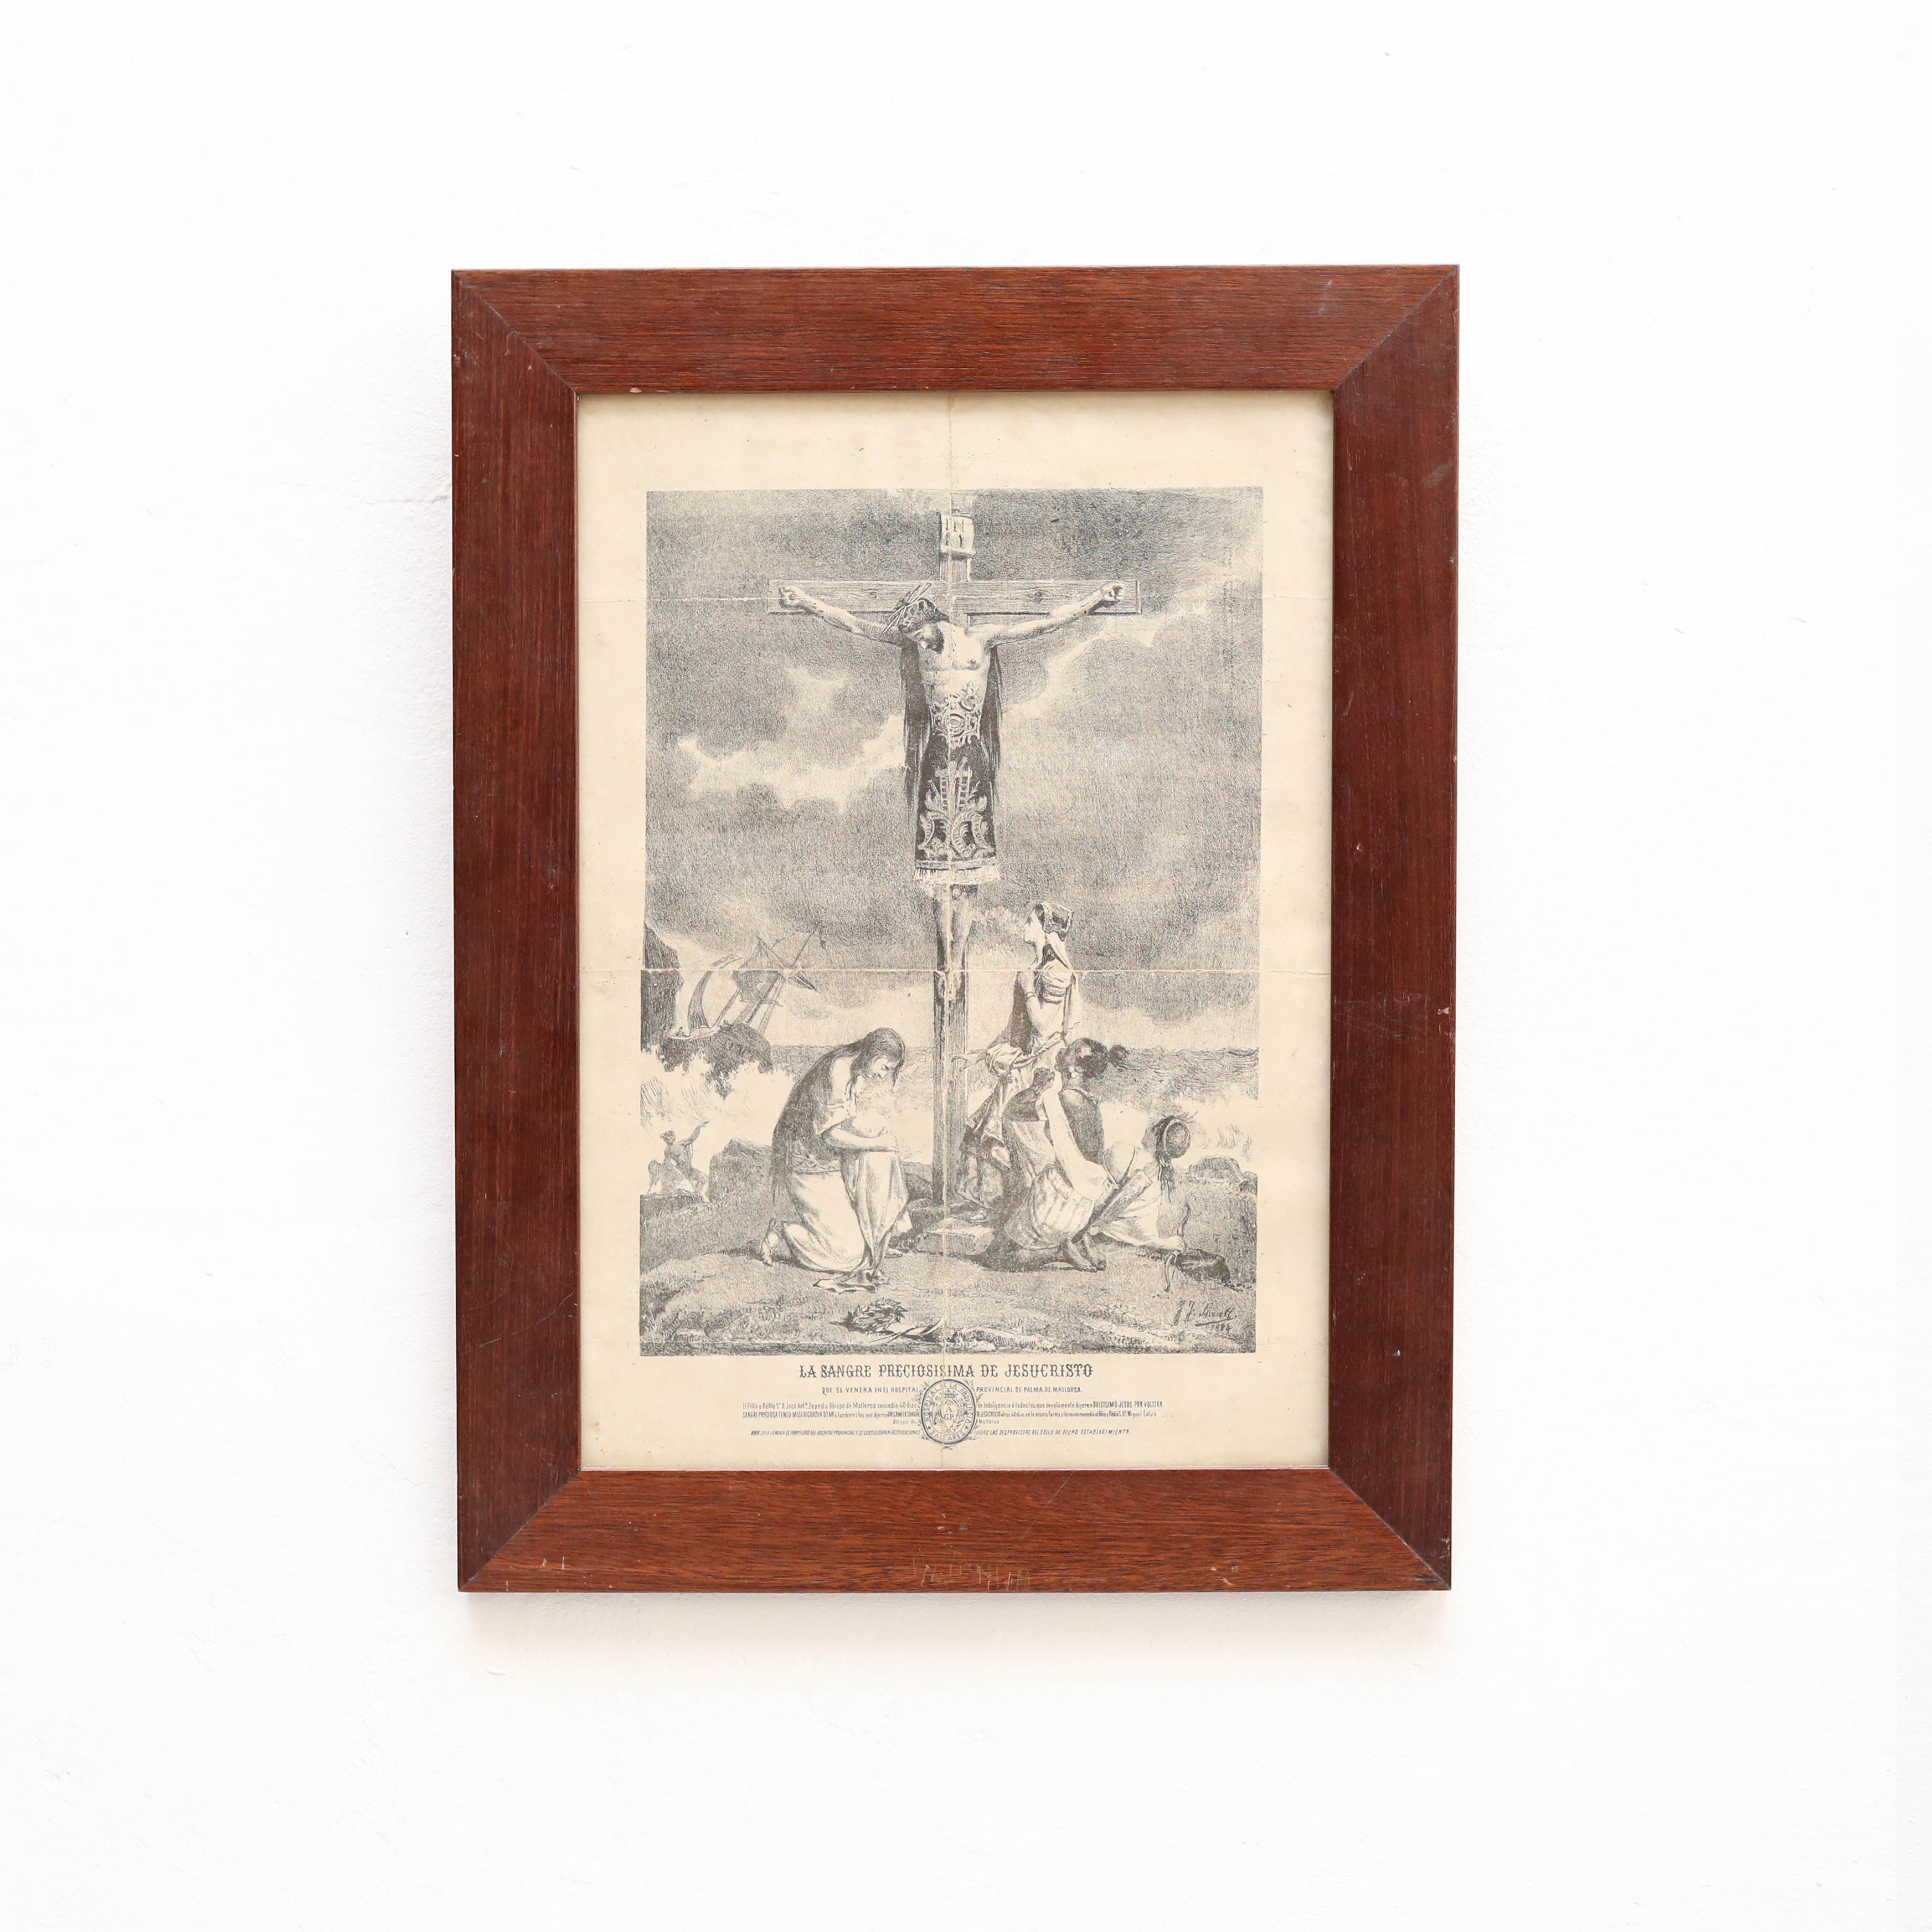 
Peinture de Jésus sur la croix, gravure sur papier, vers 1930

Artiste inconnu

En état original, avec quelques signes visibles d'utilisation et d'âge antérieurs, préservant une belle patine.

Matériaux :
Papier
Bois